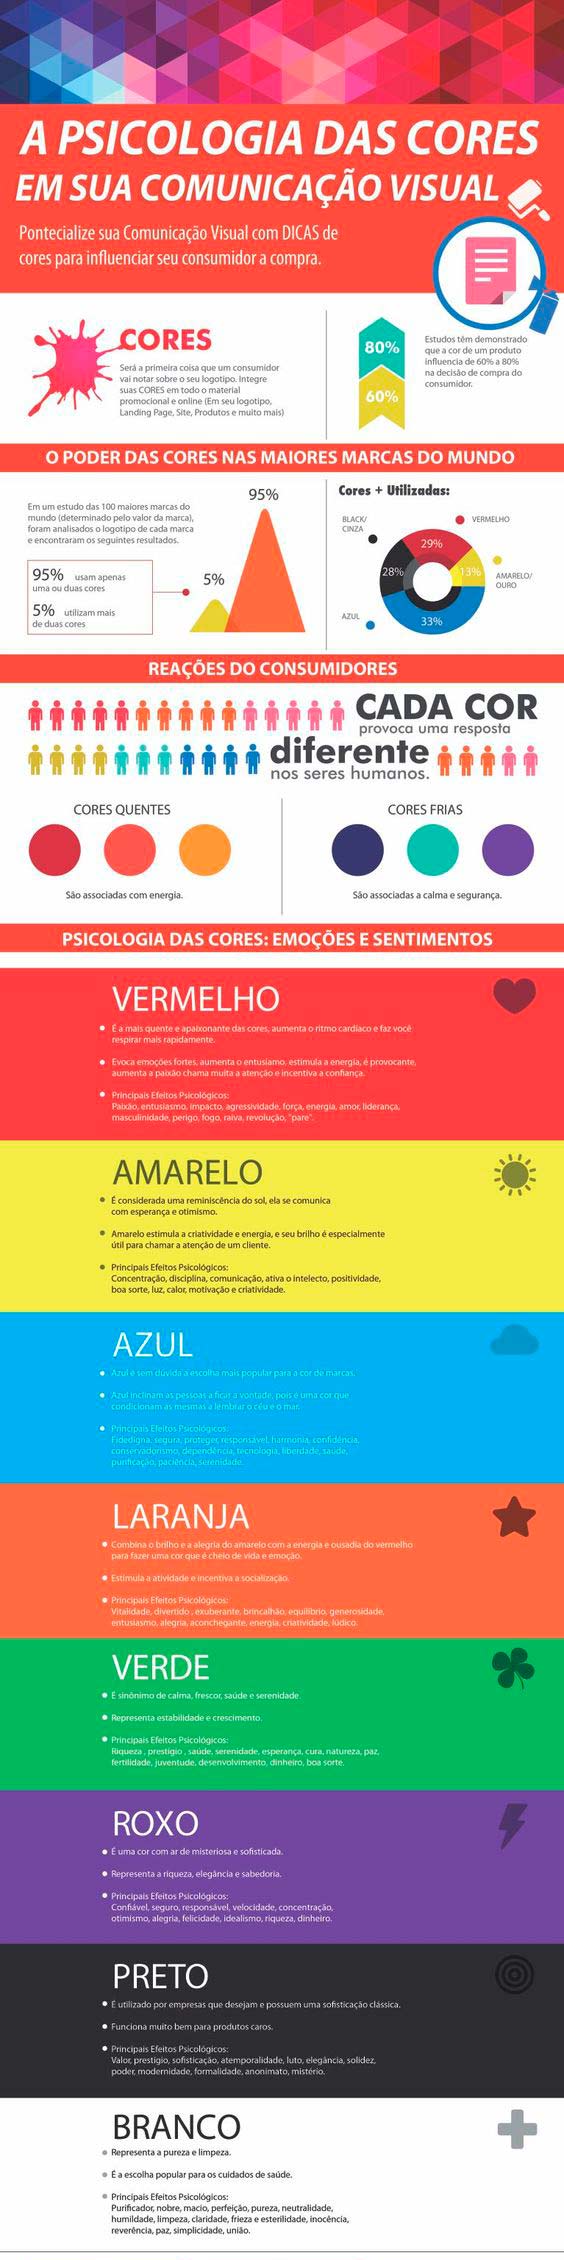 infográfico sobre psicologia das cores